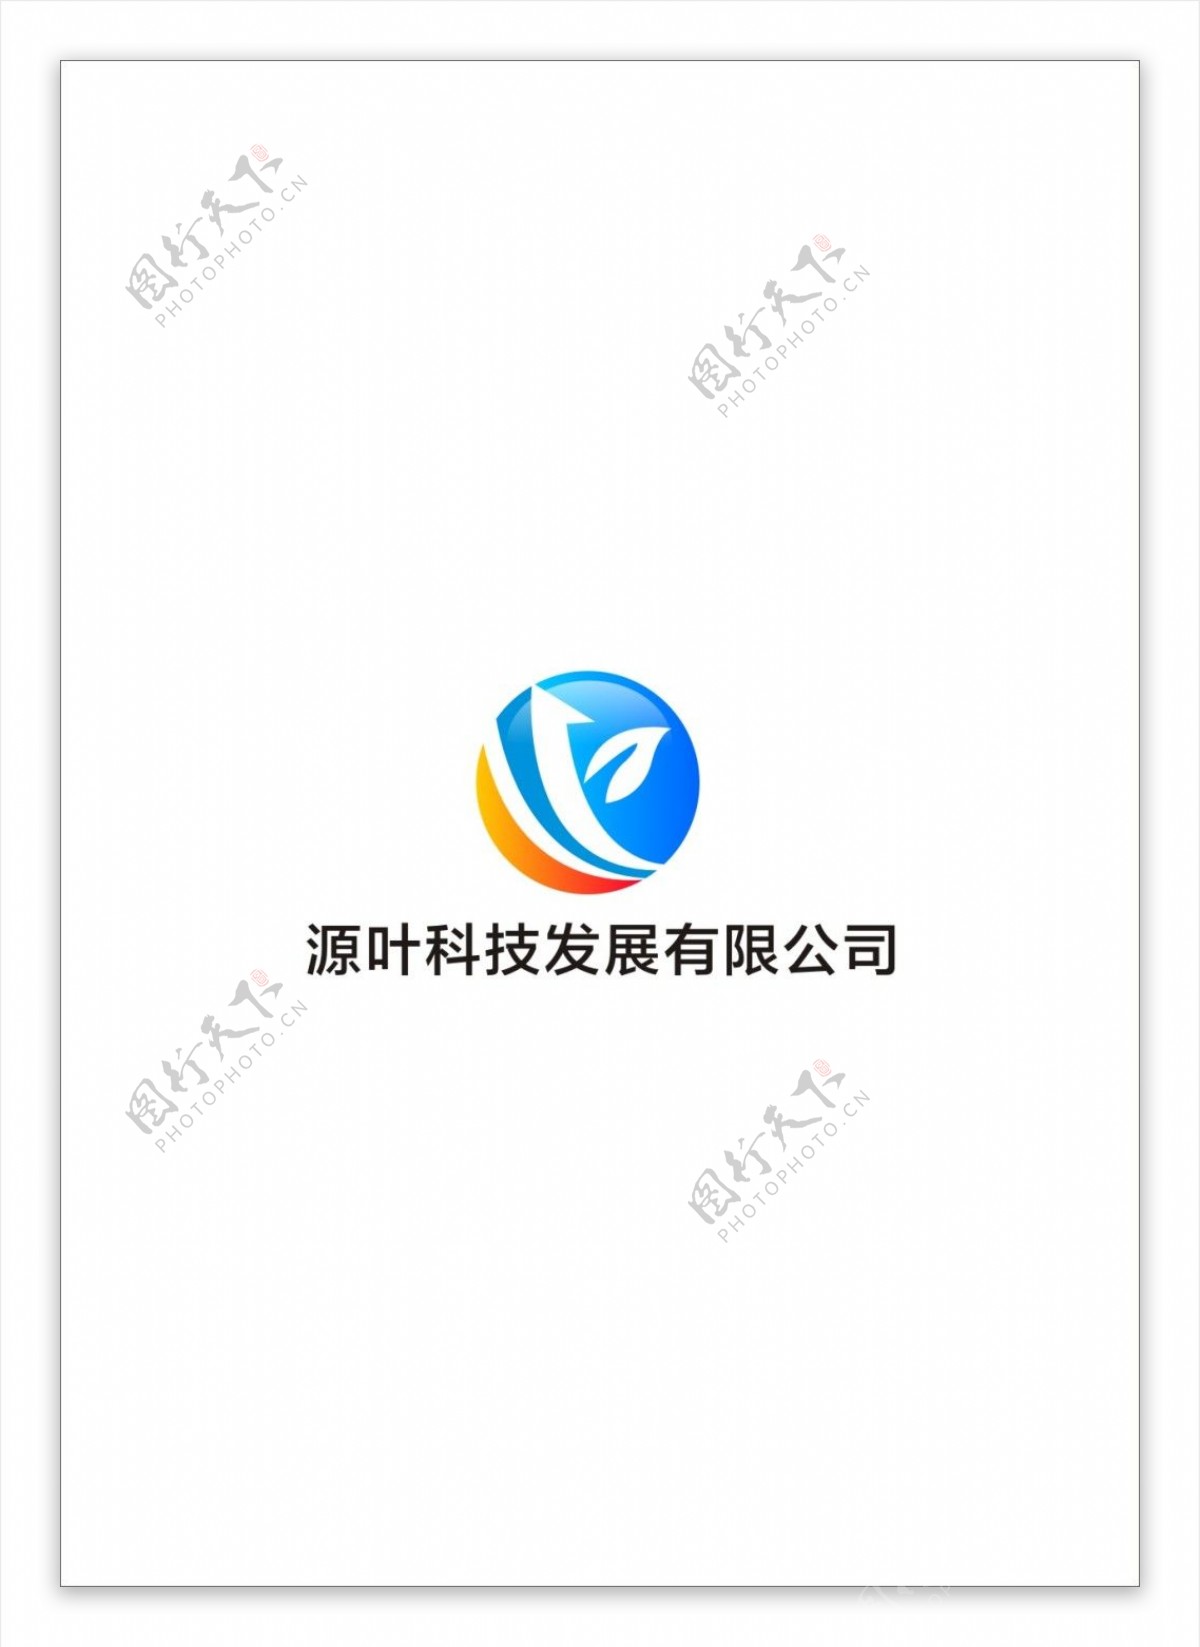 源叶科技logo